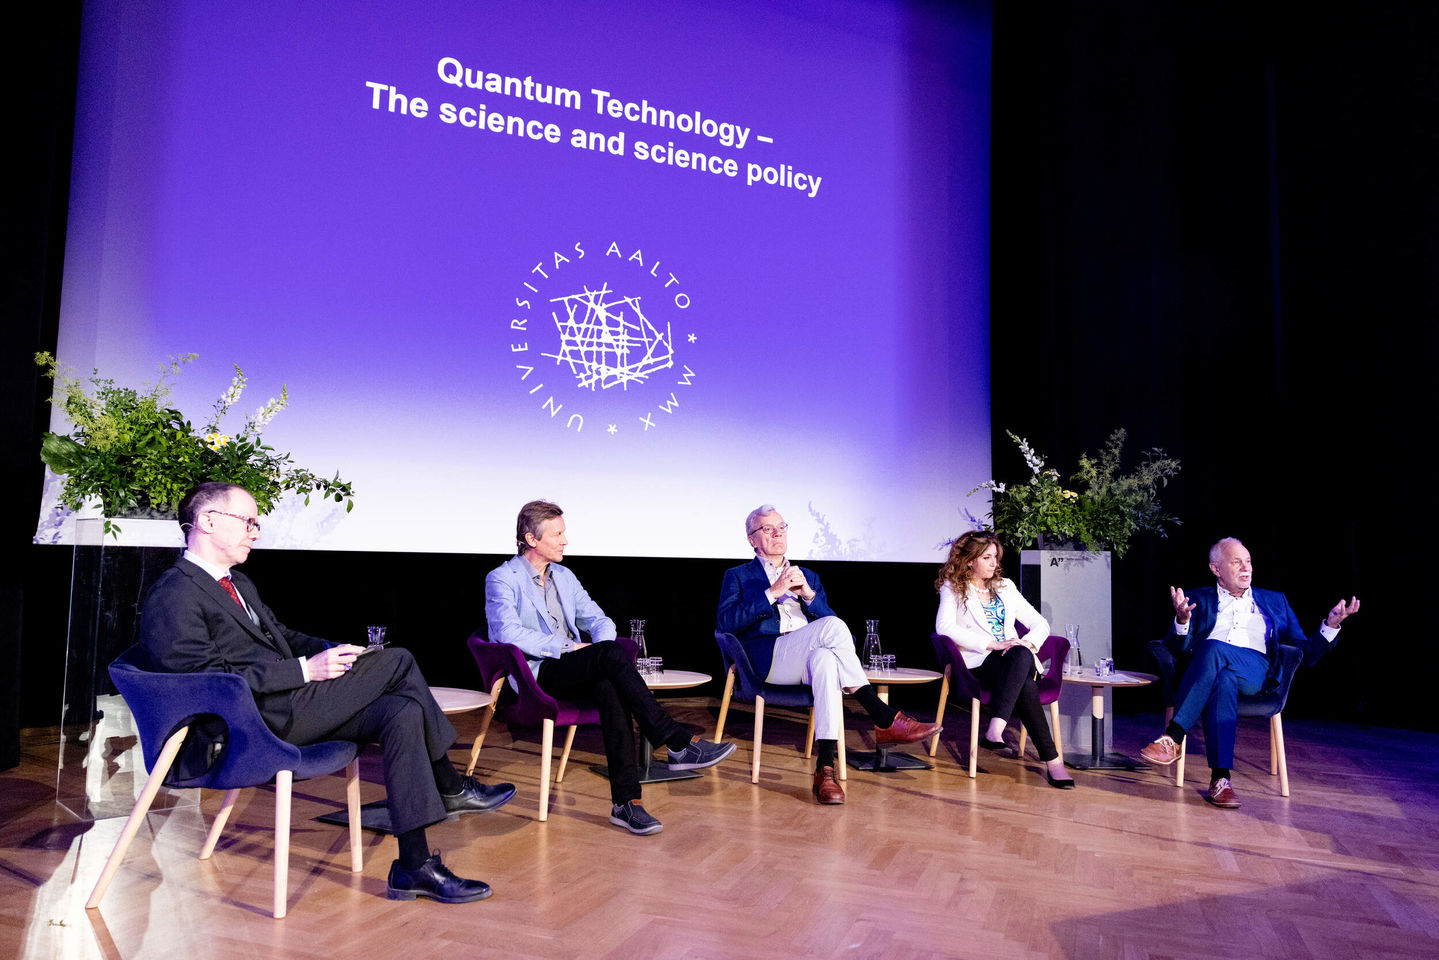 Tech conferment 2022_ quantum technology panelists